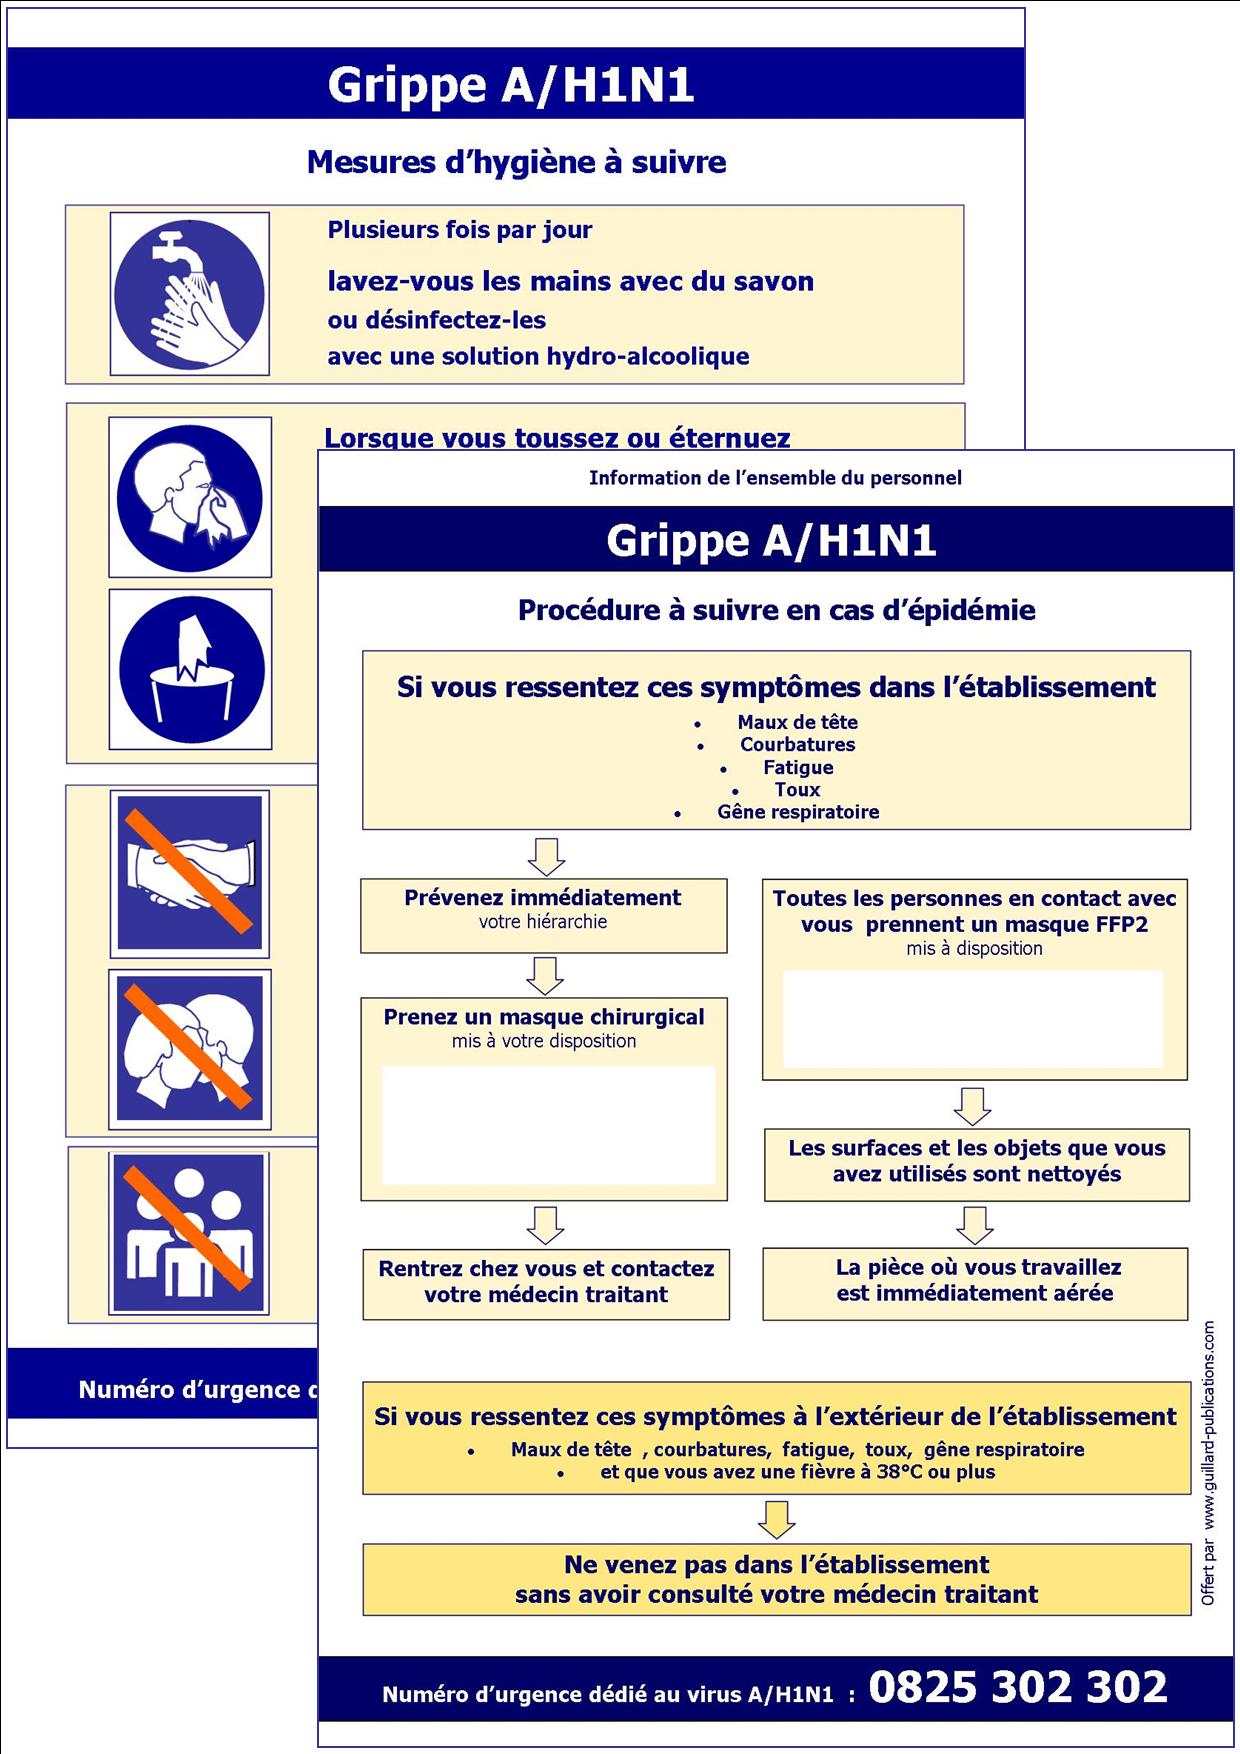 PANDEMIE - GRIPPE VIRUS A/H1N1 - Affiches PROCEDURE et MESURES D'HYGIENE A SUIVRE